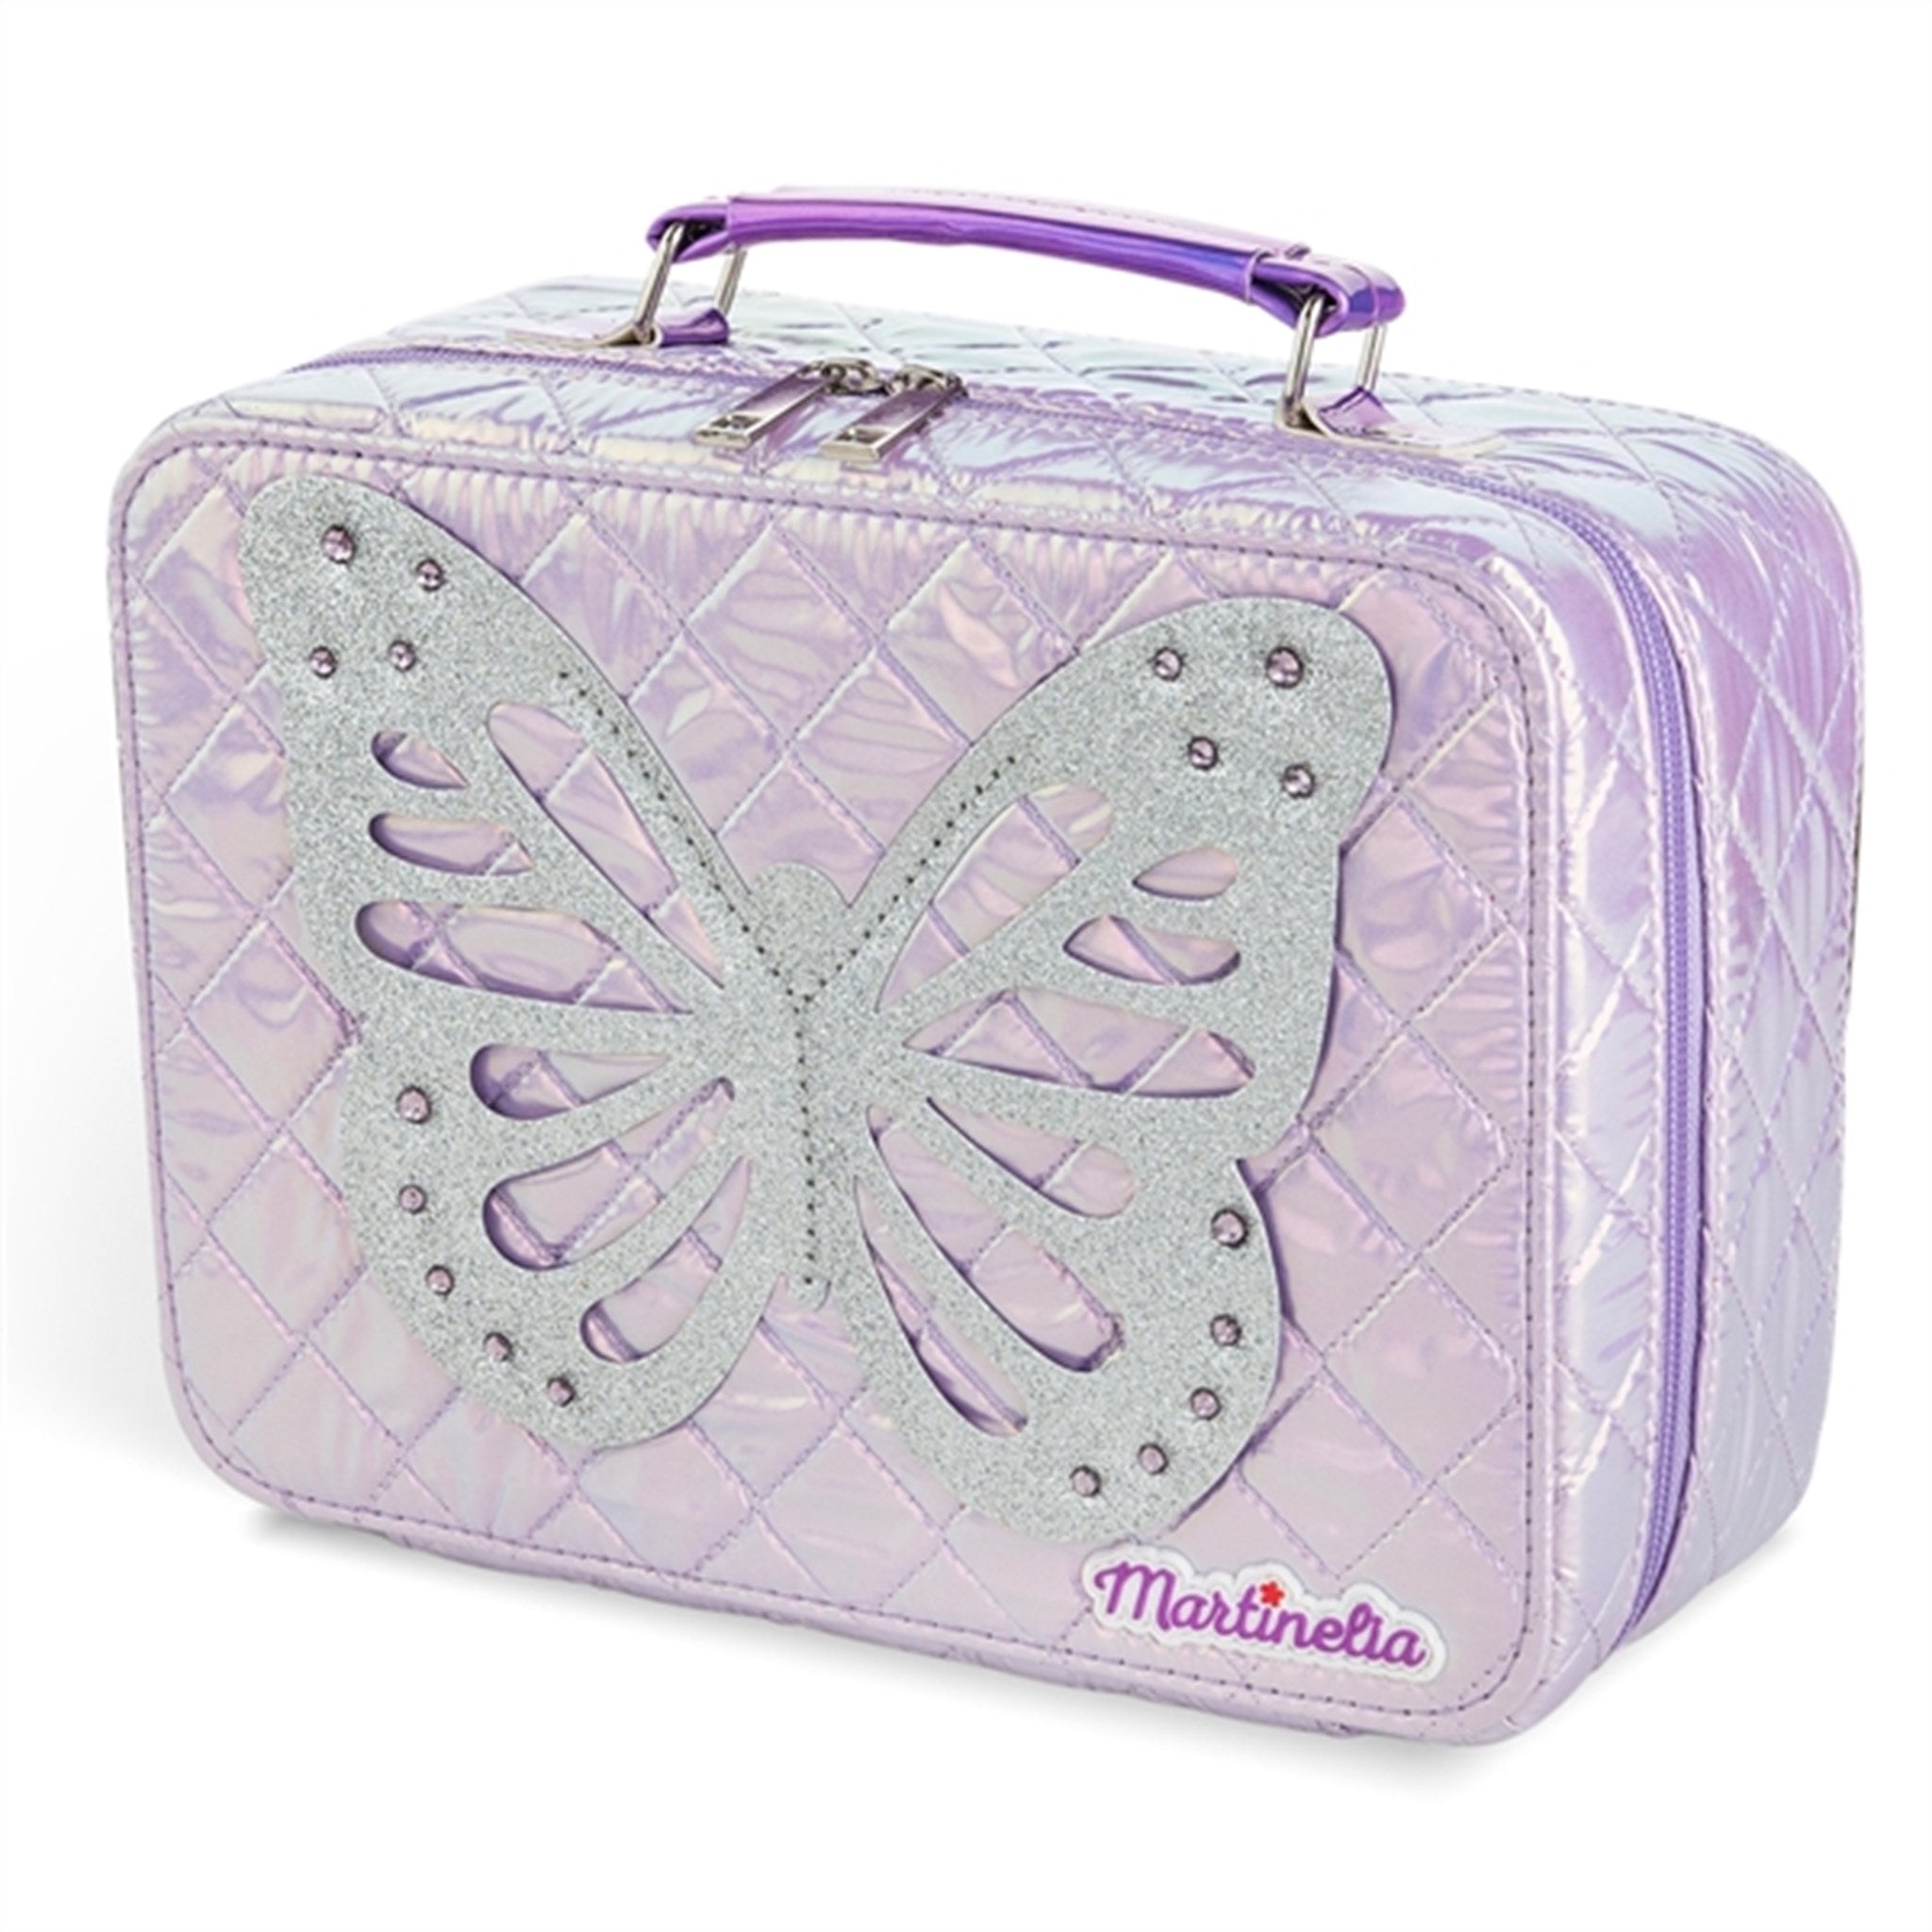 Martinelia Butterfly Beauty Case